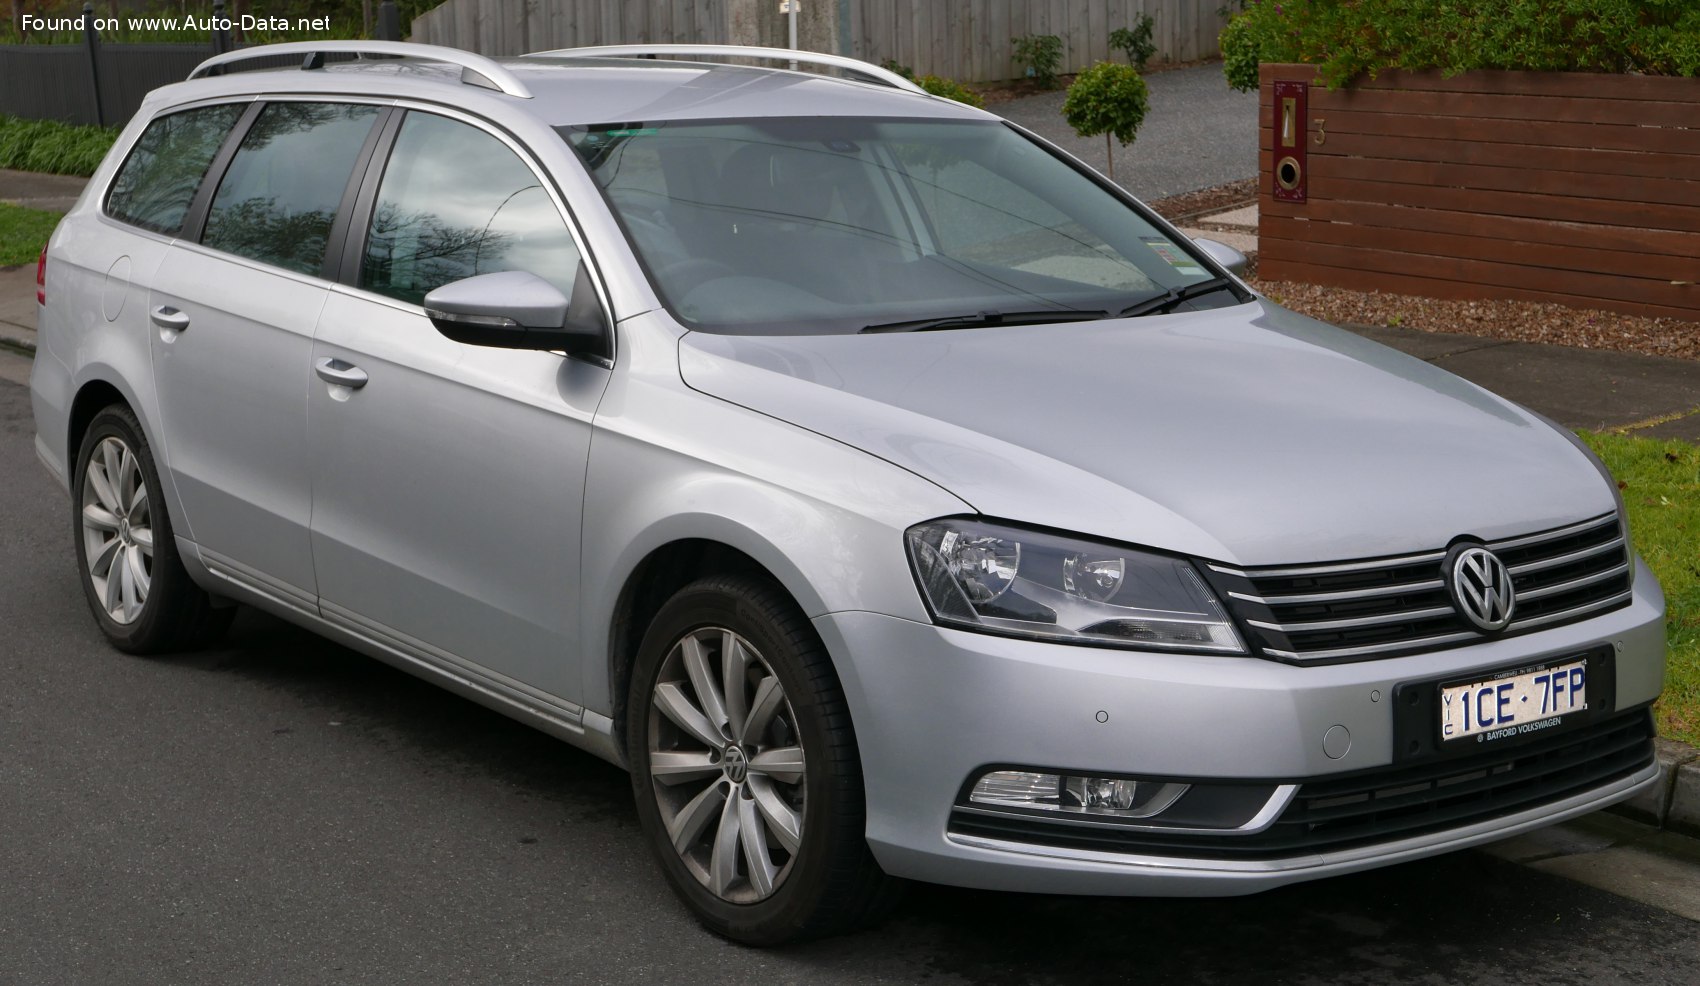 2010 Volkswagen Passat Variant (B7) 2.0 TDI (140 PS)  Technische Daten,  Verbrauch, Spezifikationen, Maße